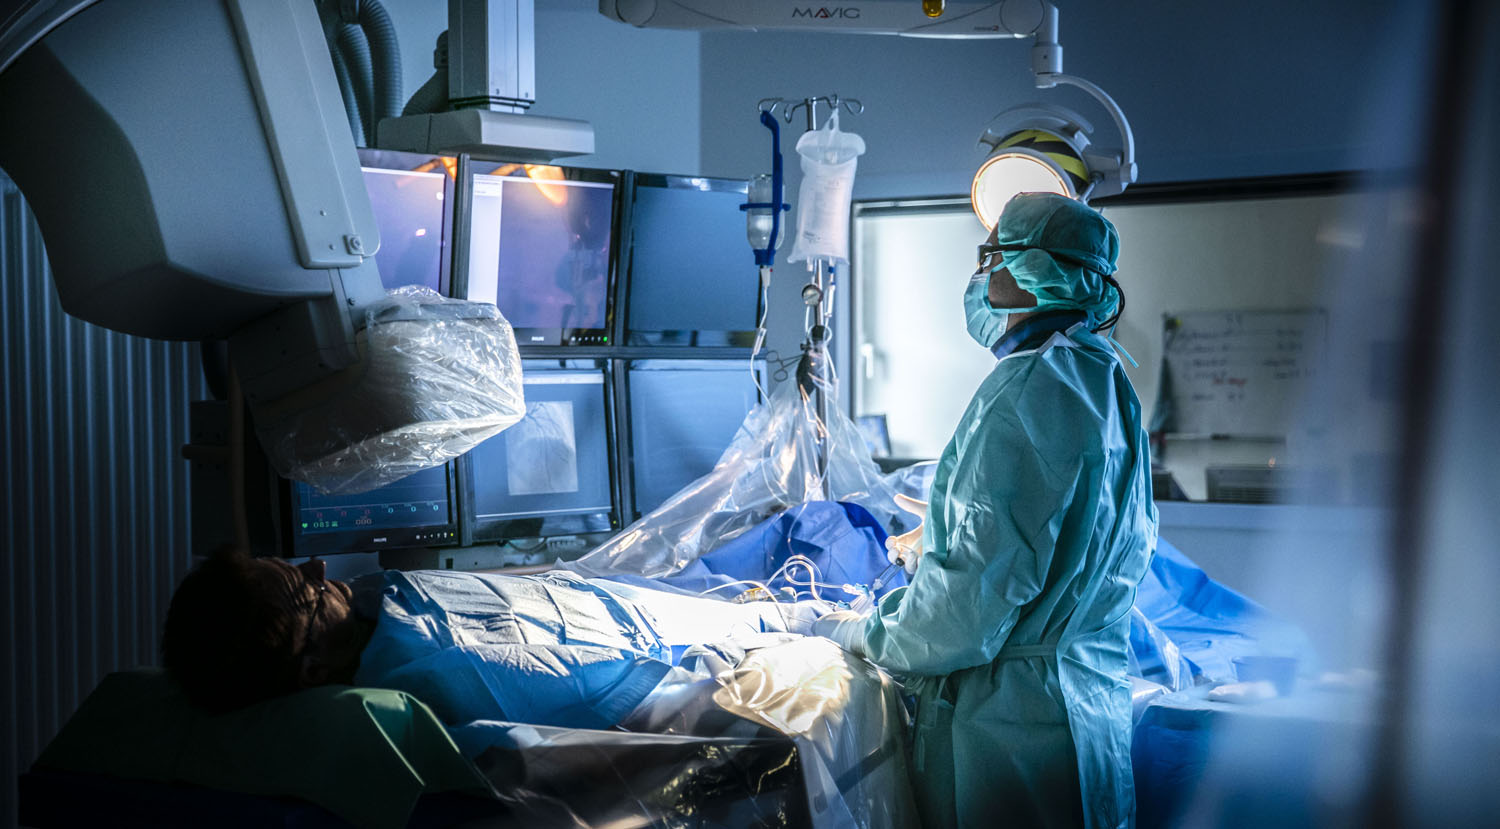 Healthcare Fotografie: Ein Kardiologe führt eine Herzkatheter-Untersuchung durch. Der Raum ist abgedunkelt, der Arzt in OP-Kleidung.